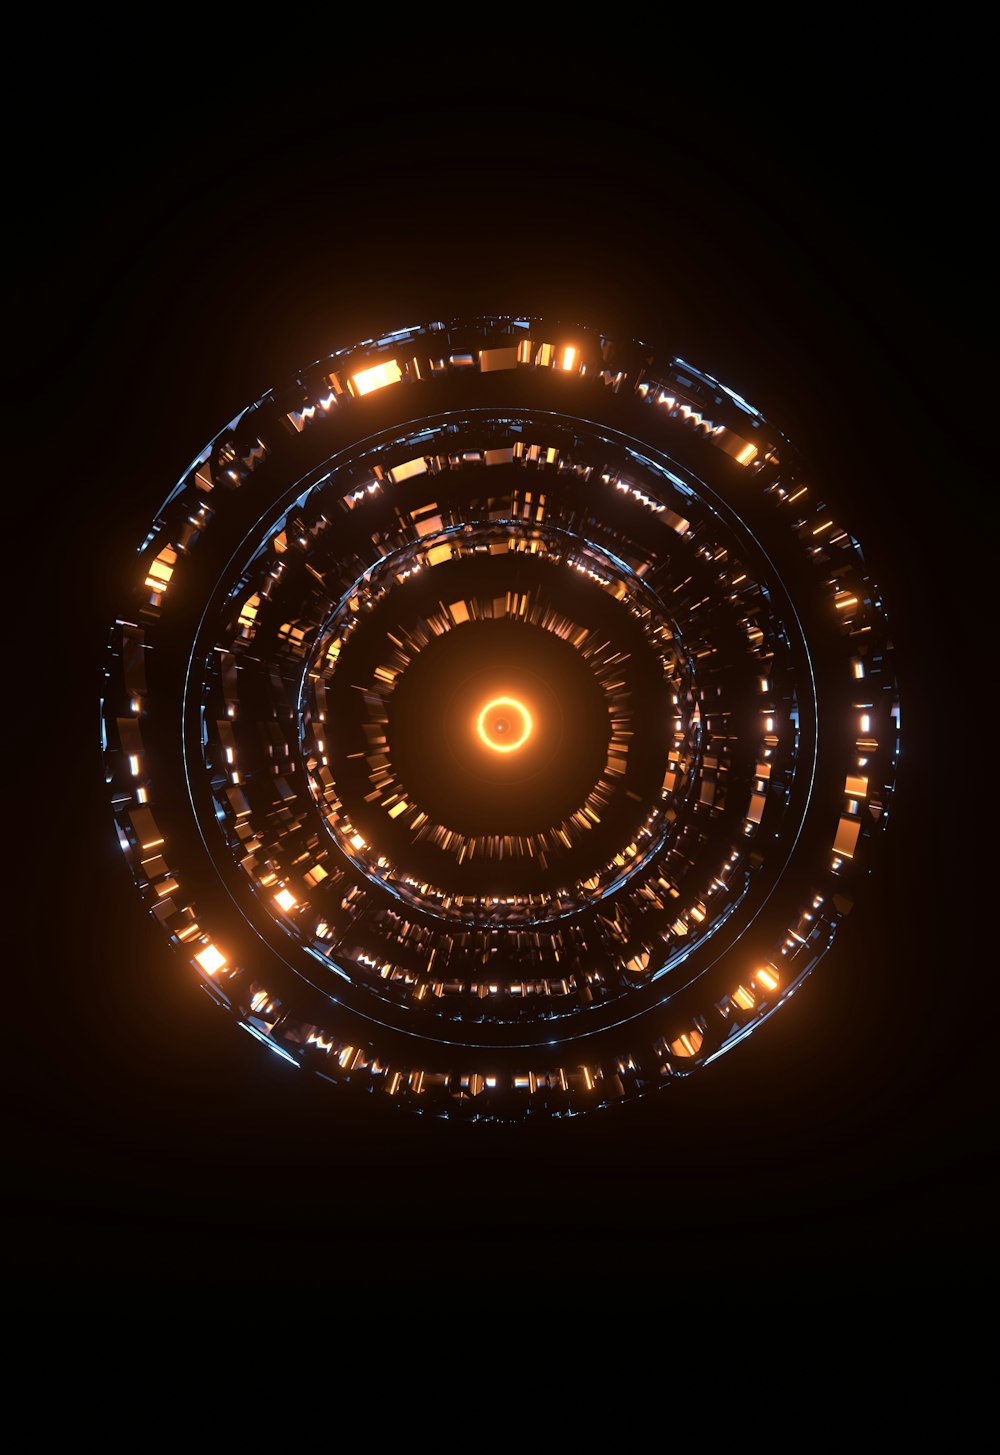 Un objet circulaire avec des lumières